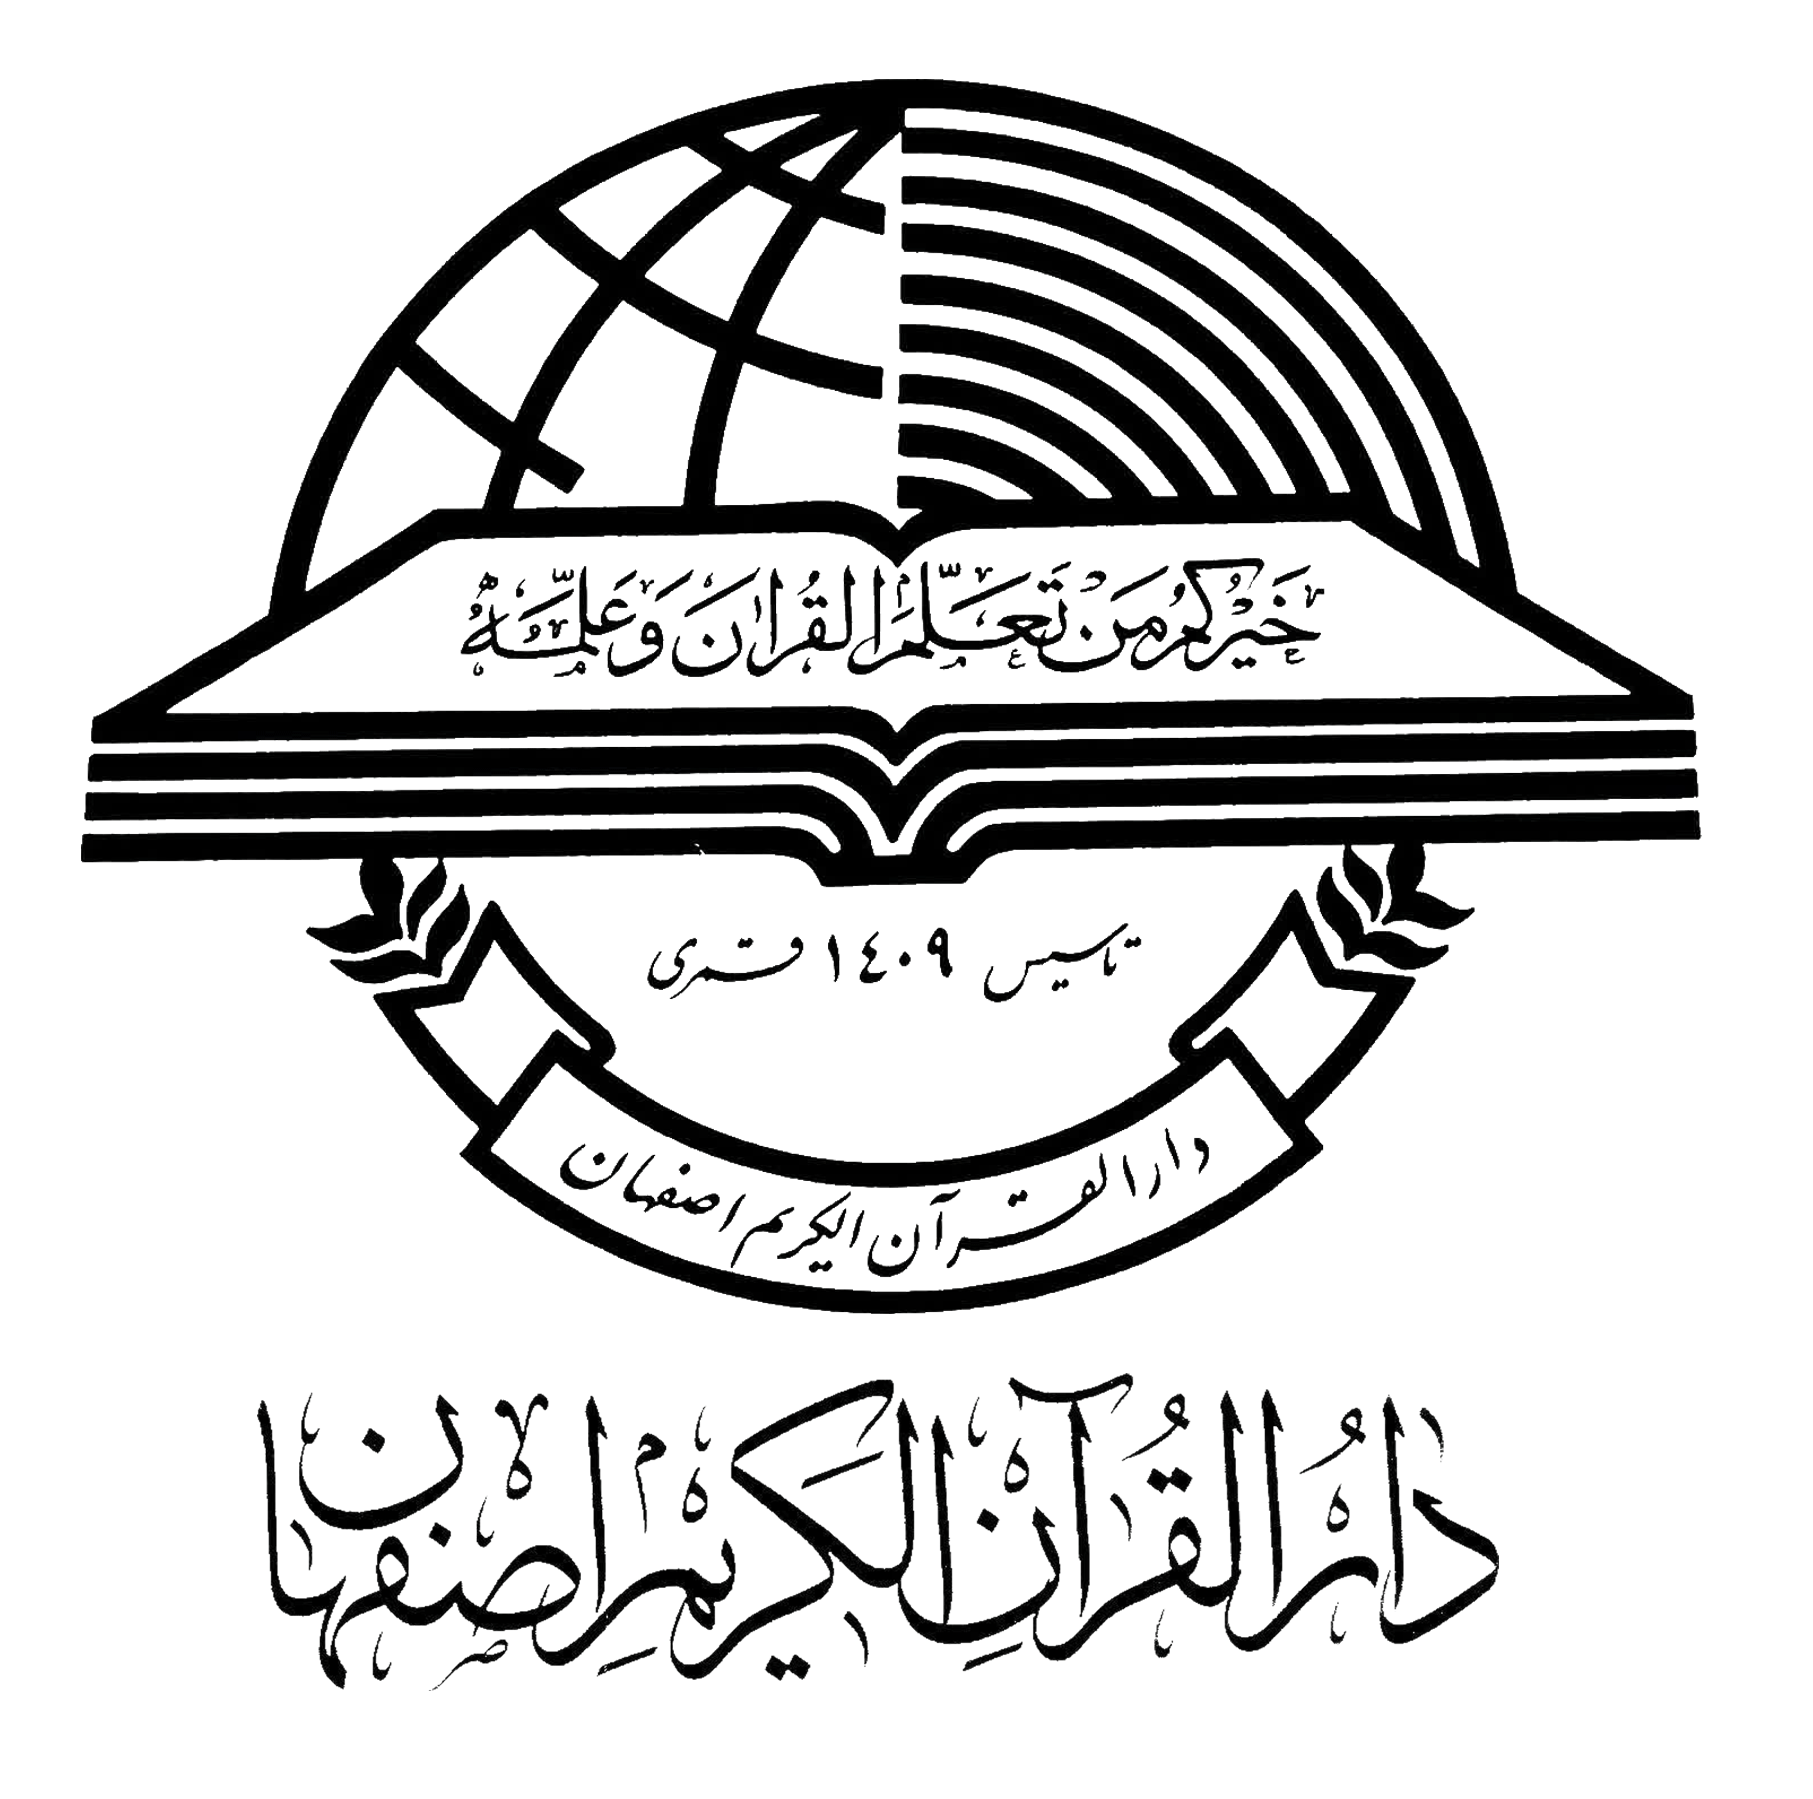 نرم افزار فهیم - دارالقرآن کریم اصفهان